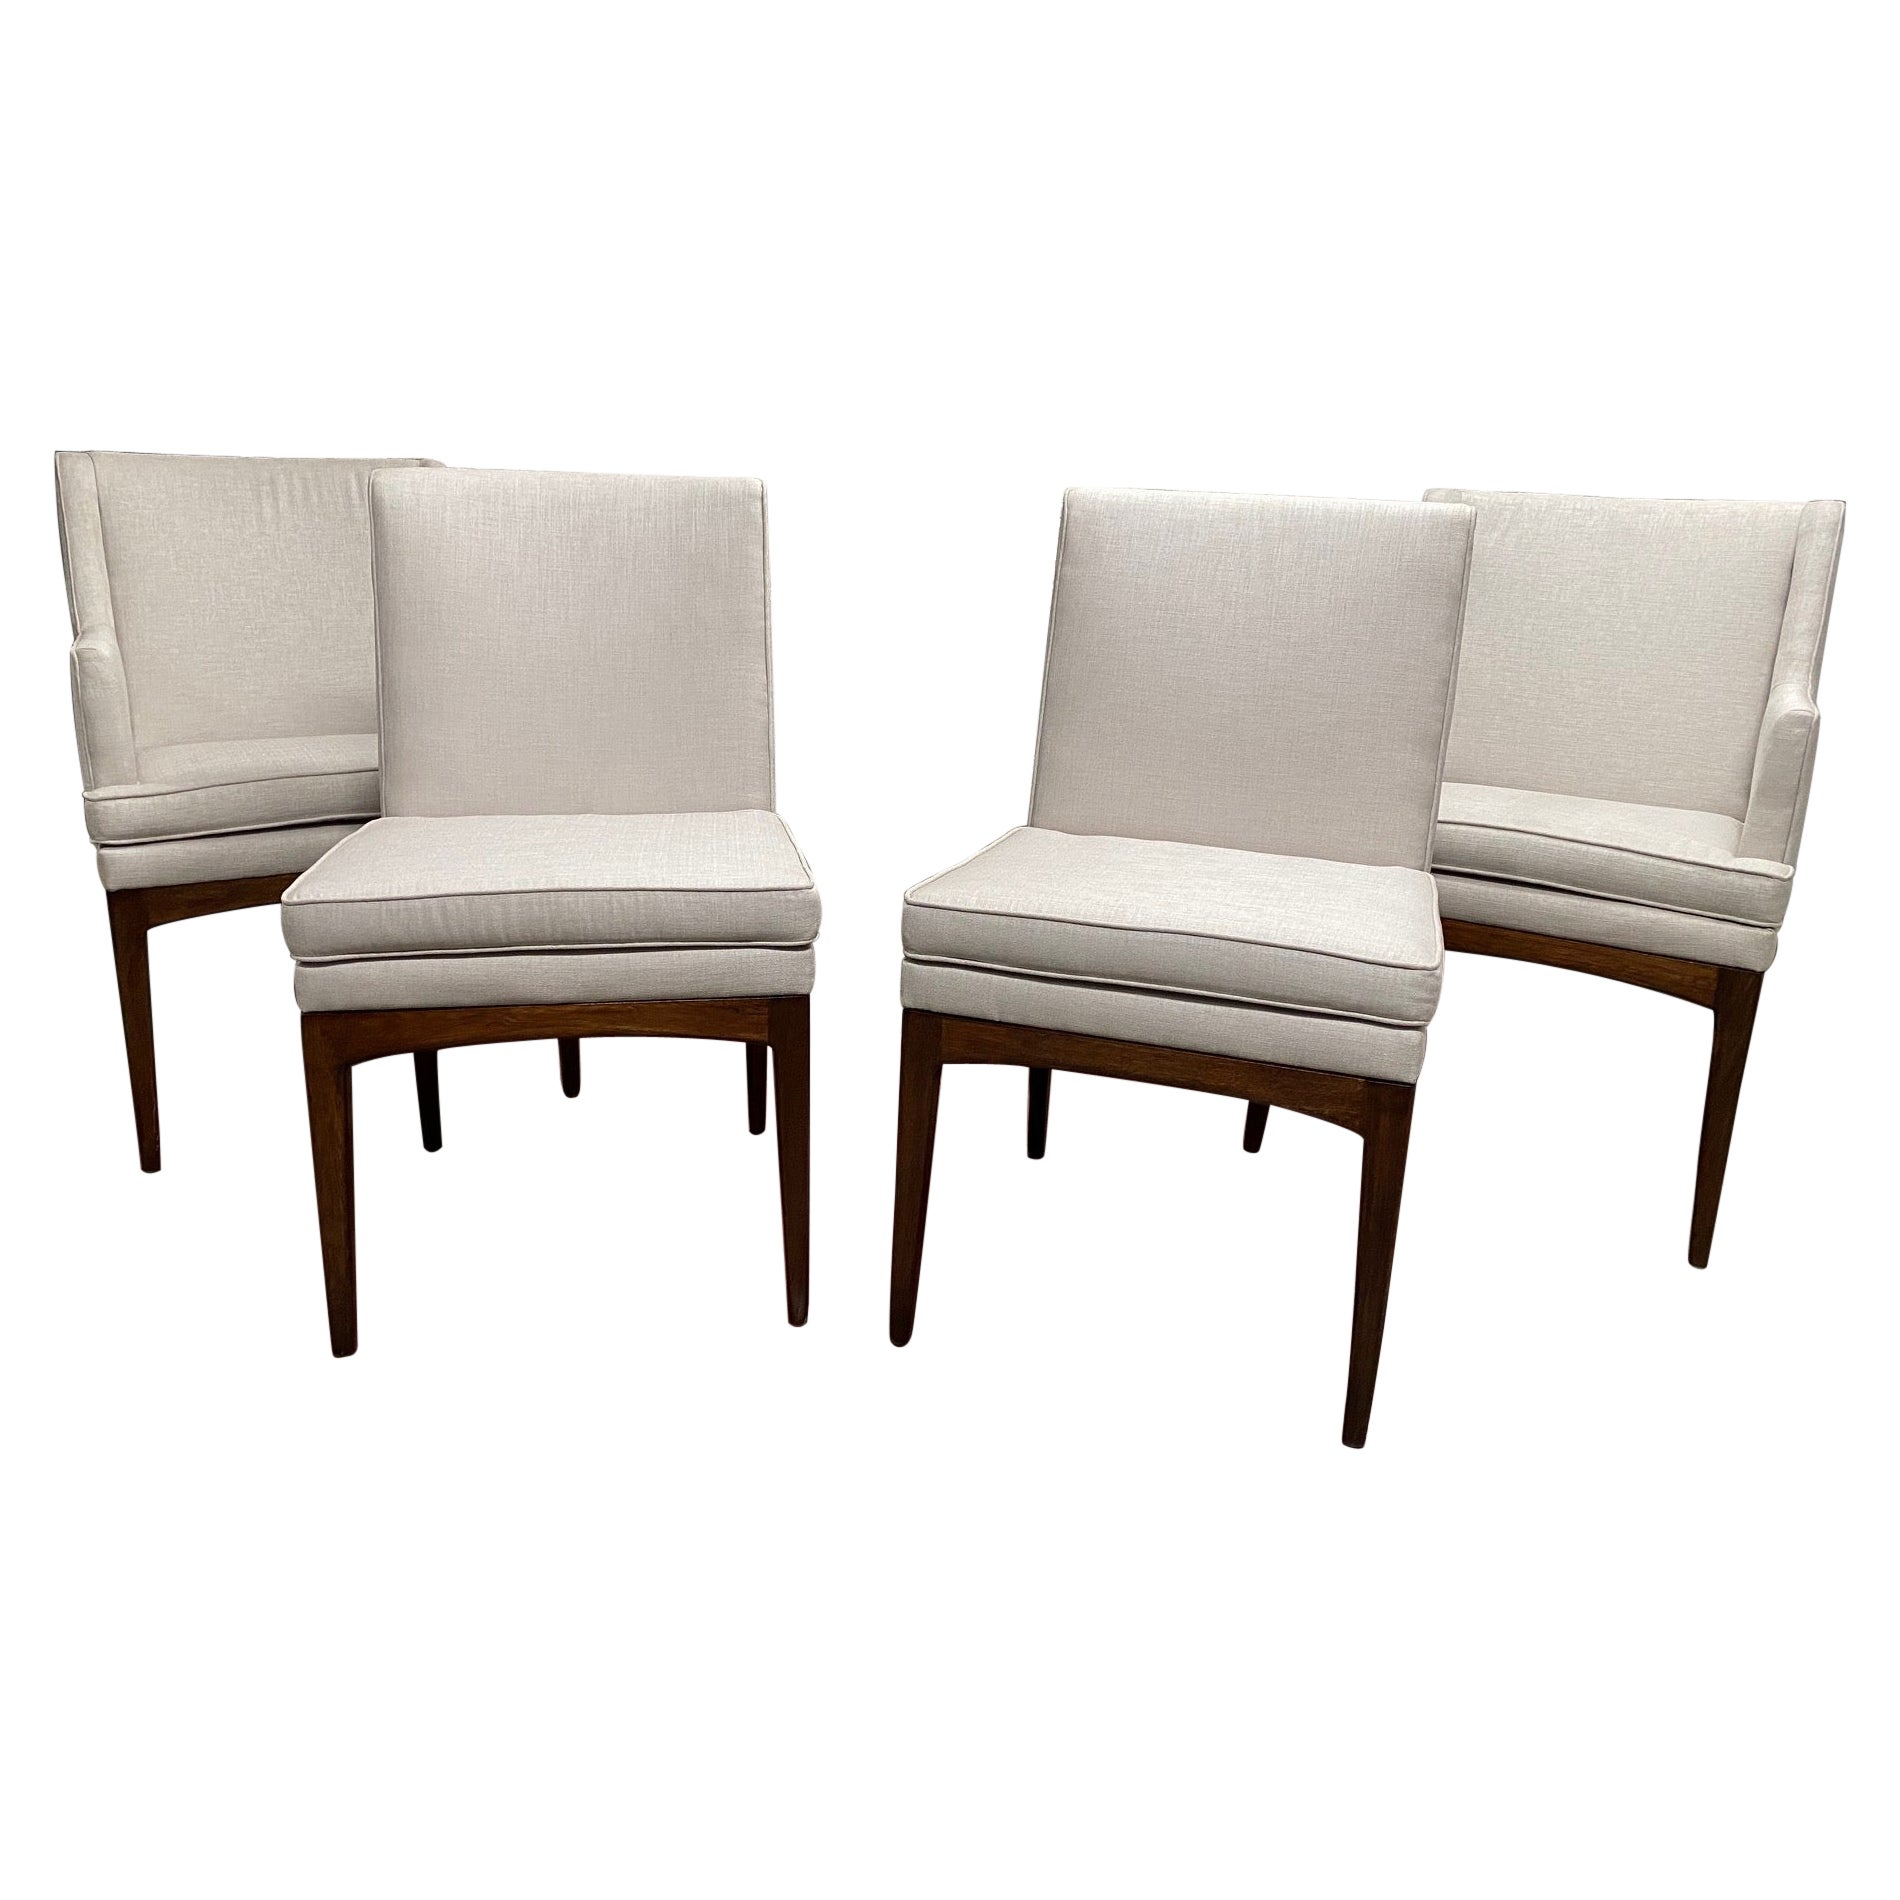  Vierer-Set Modernist Nussbaum und gepolstertes Esszimmer  Stühle von Flair Furniture